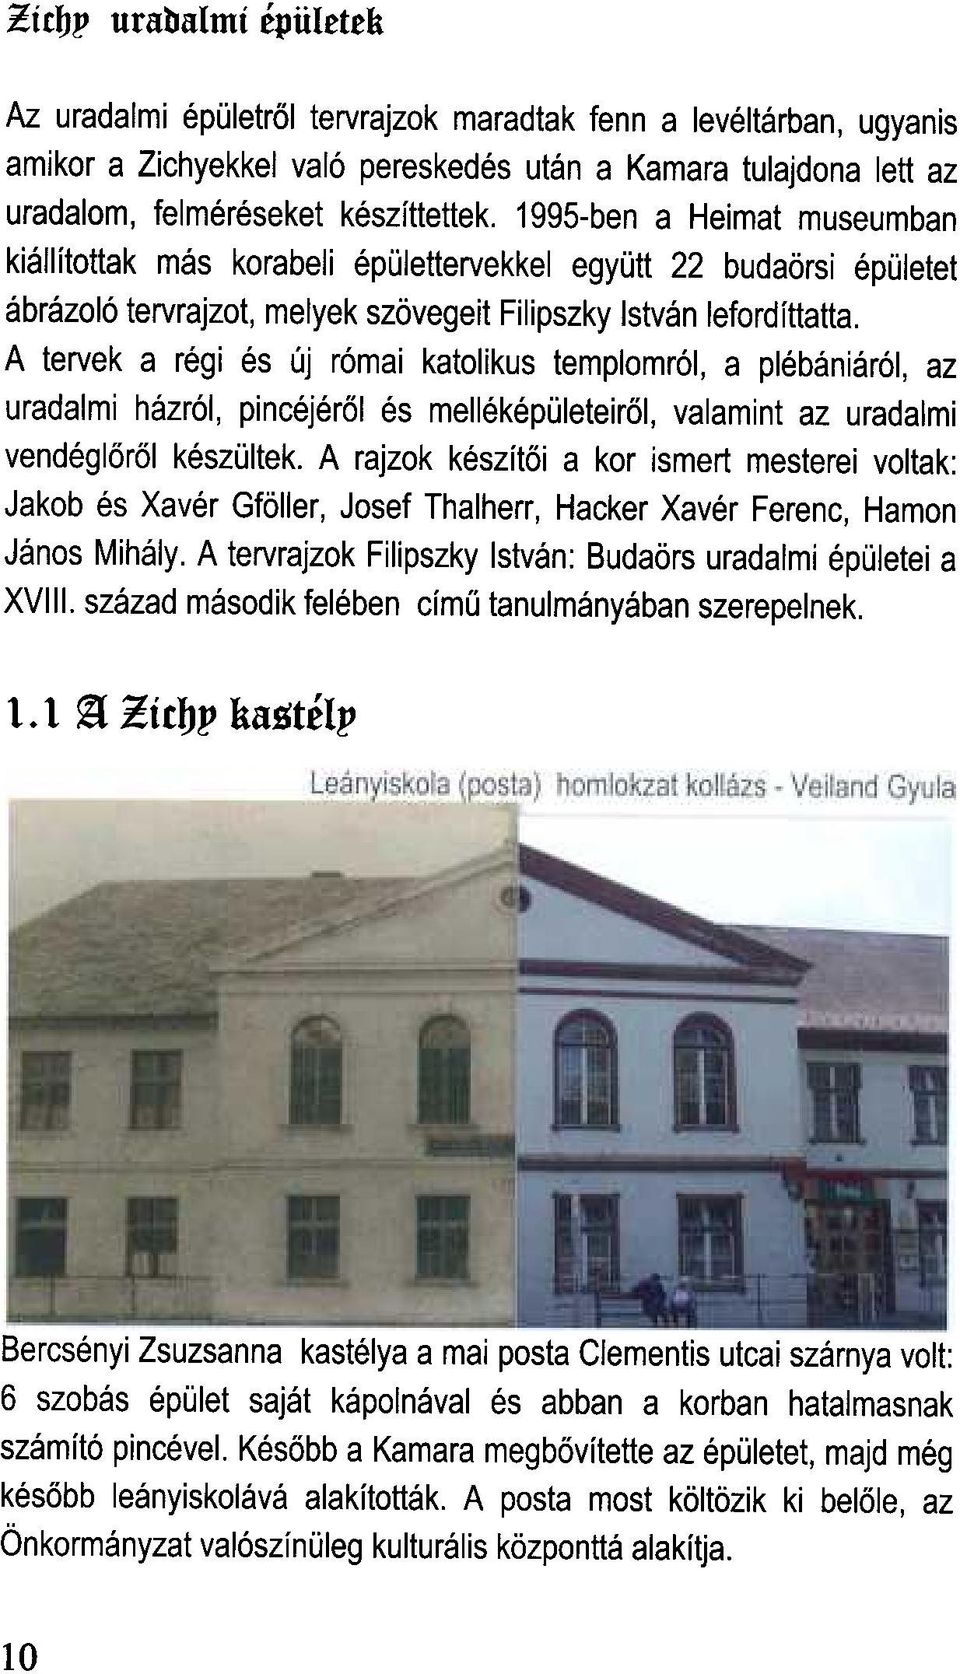 1995-ben a Heimat museumban kiallftottak mas korabeli epolettervekkel egyott 22 buda6rsi epoletet abrazol6 tervrajzot, melyek sz6vegeit Filipszky Istvan lefordfttatta.